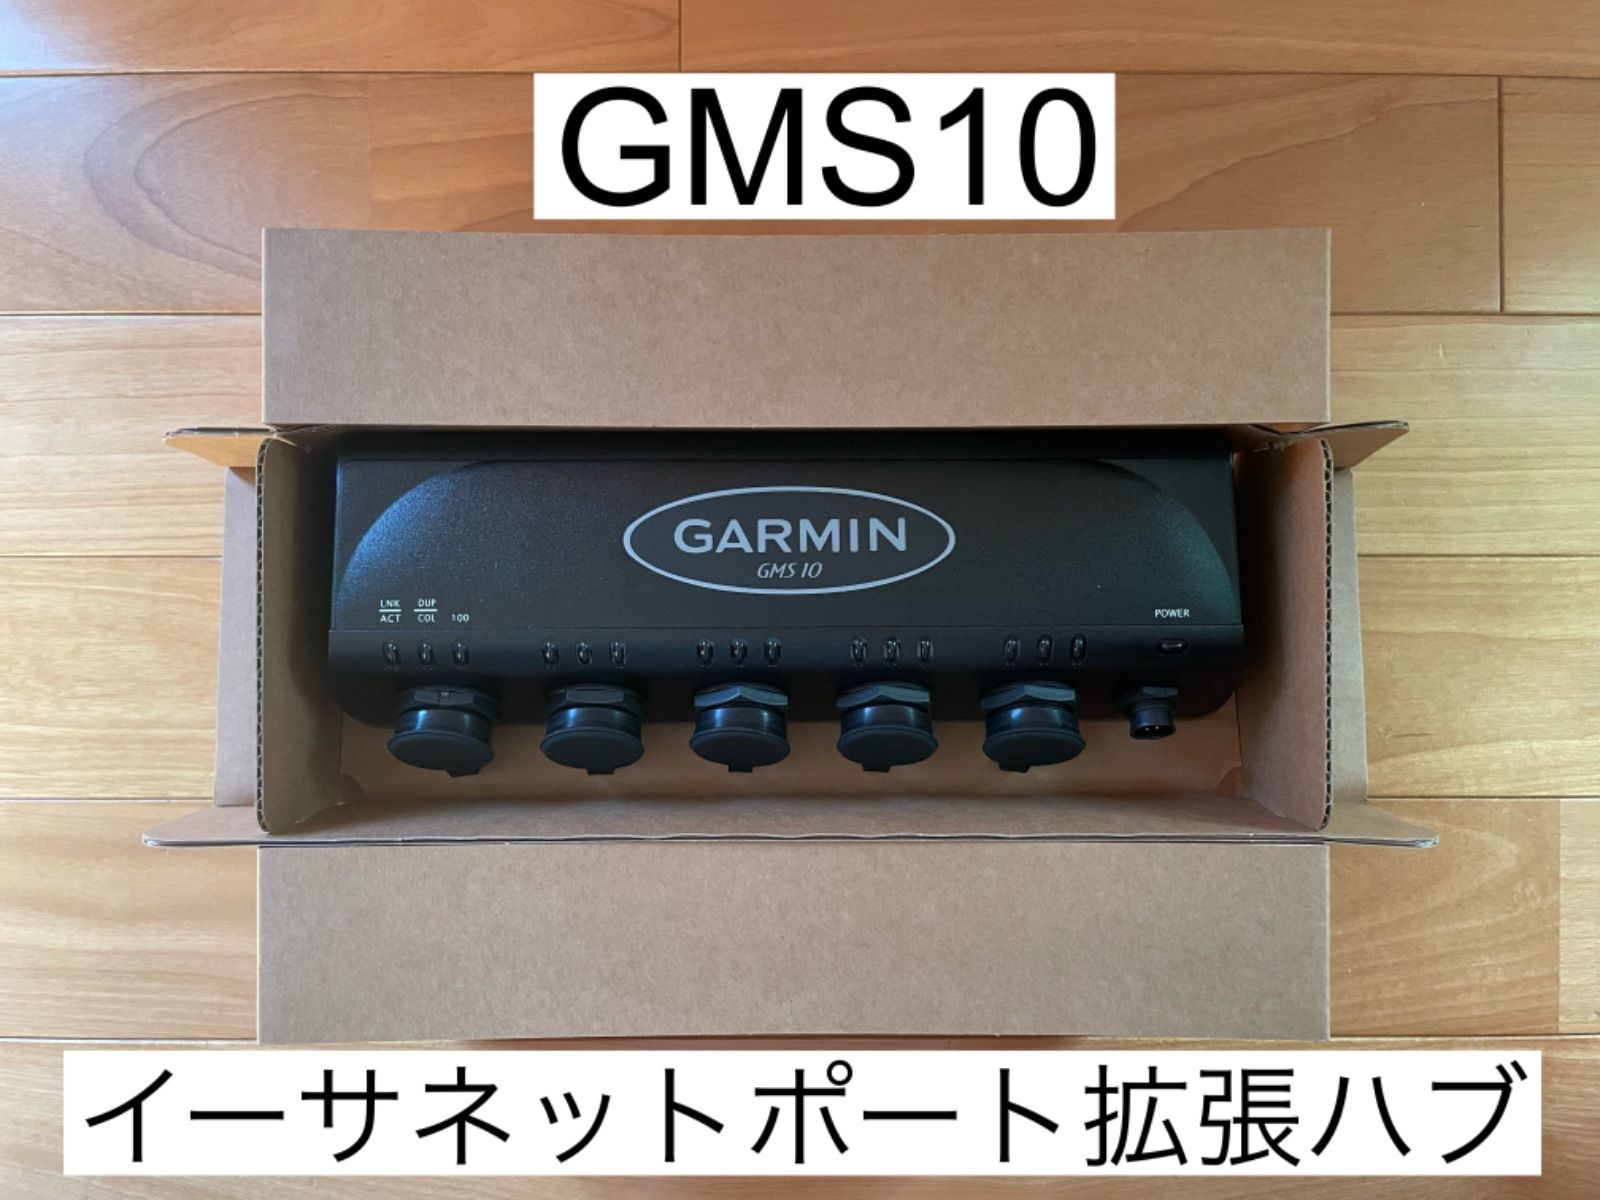 ガーミン GMS10 ネットワークポート拡張ハブ - フィッシング